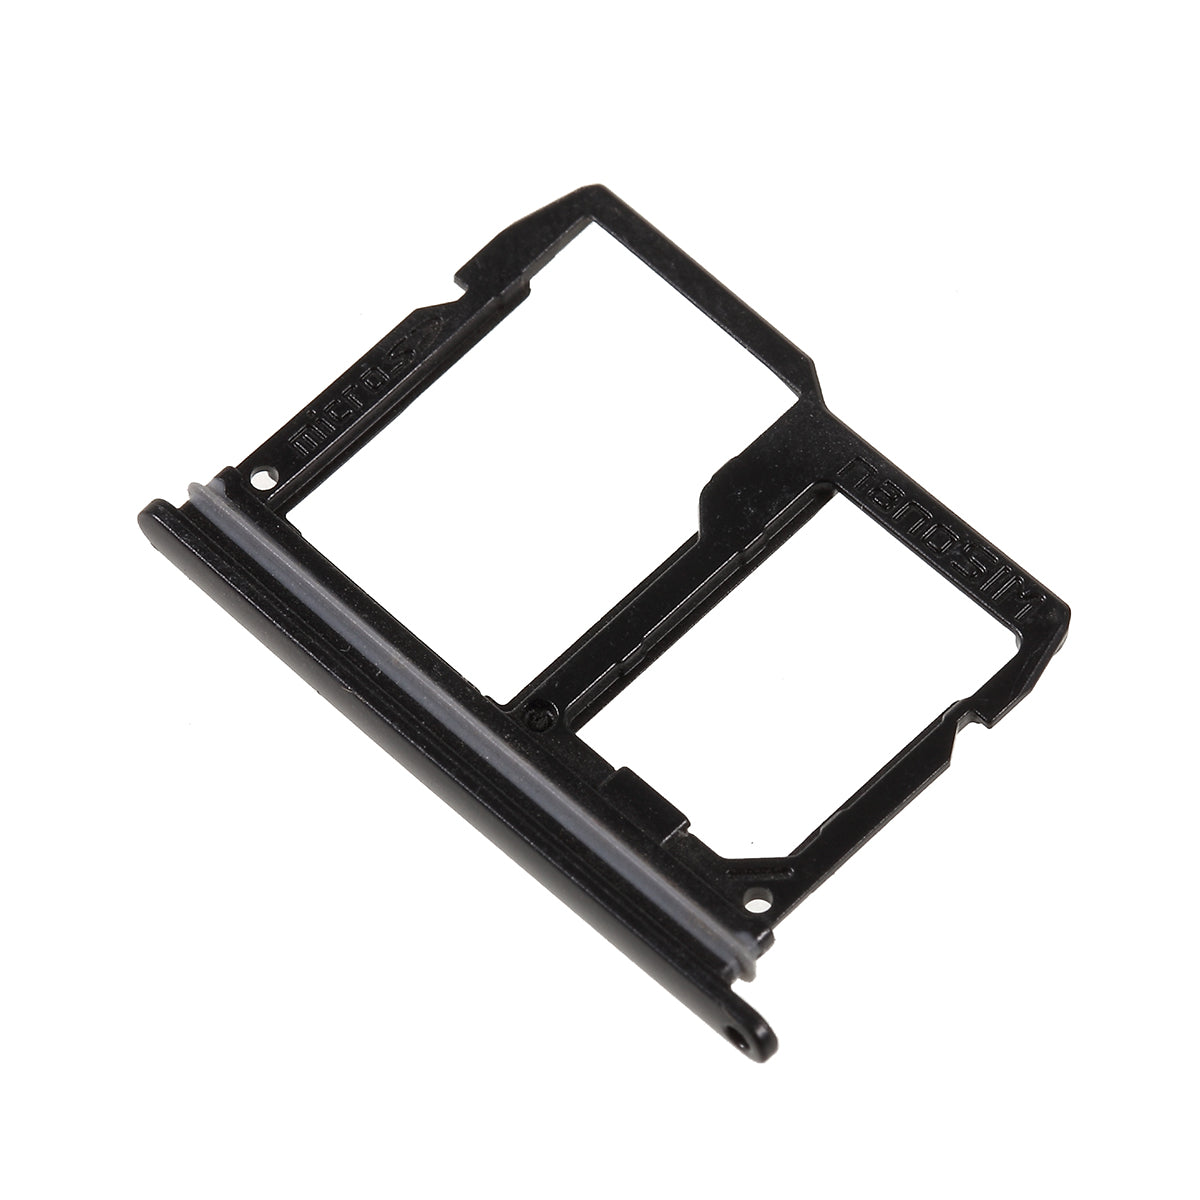 OEM SIM Card Tray Holder Slot for LG Q7 Q610/LG Q Stylo 4 Q710- Black